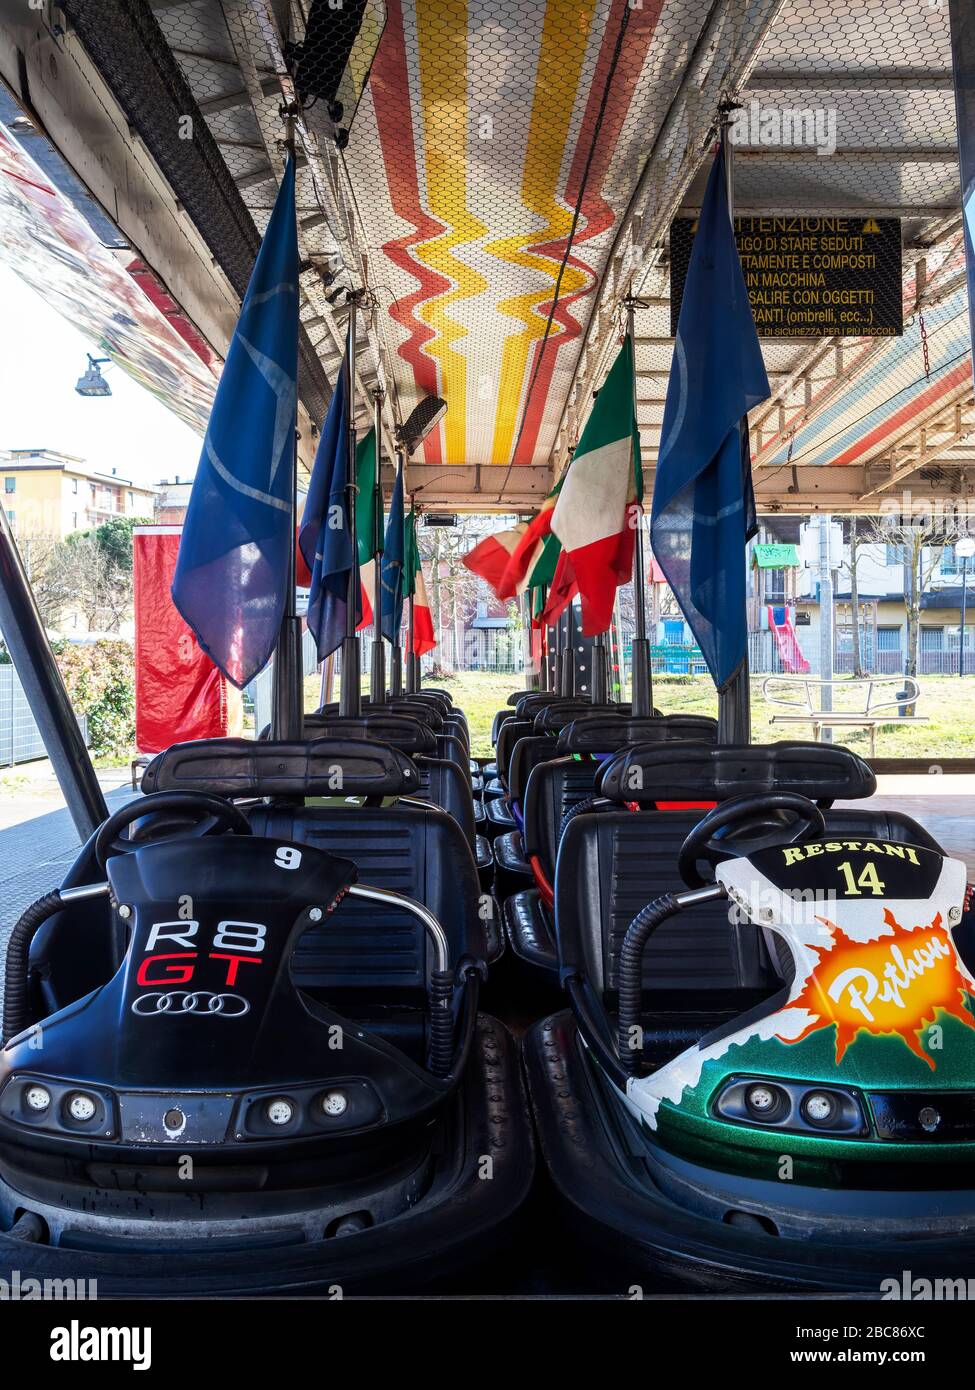 AULLA, ITALIA - 12 febbraio 2020: File di Dodgem aka Bumper Cars parcheggiate nel Fun Fair Amusement Park. Con bandiera italiana. Foto Stock